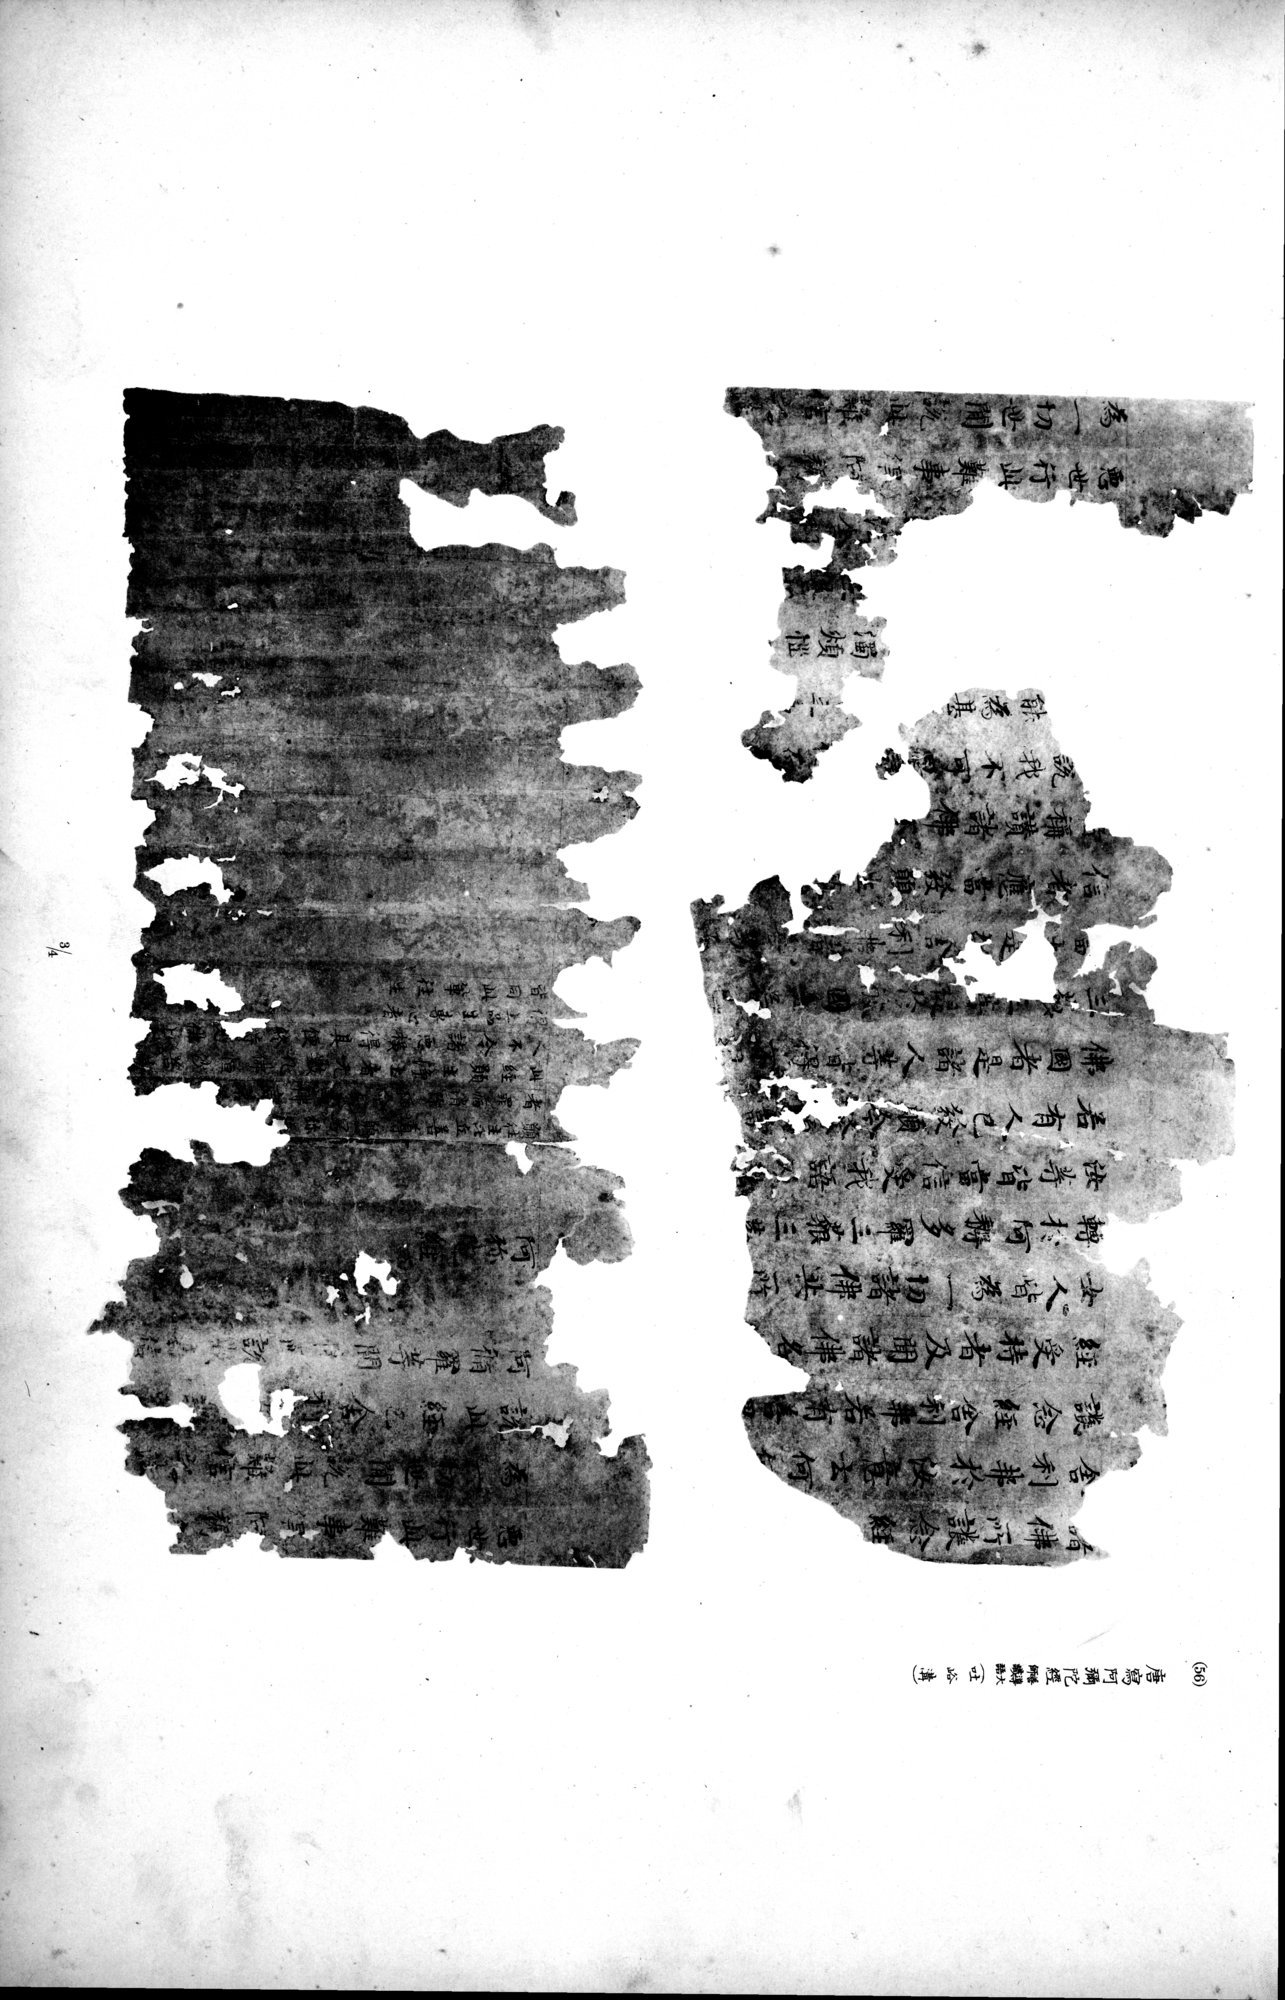 西域考古図譜 : vol.2 / Page 127 (Grayscale High Resolution Image)